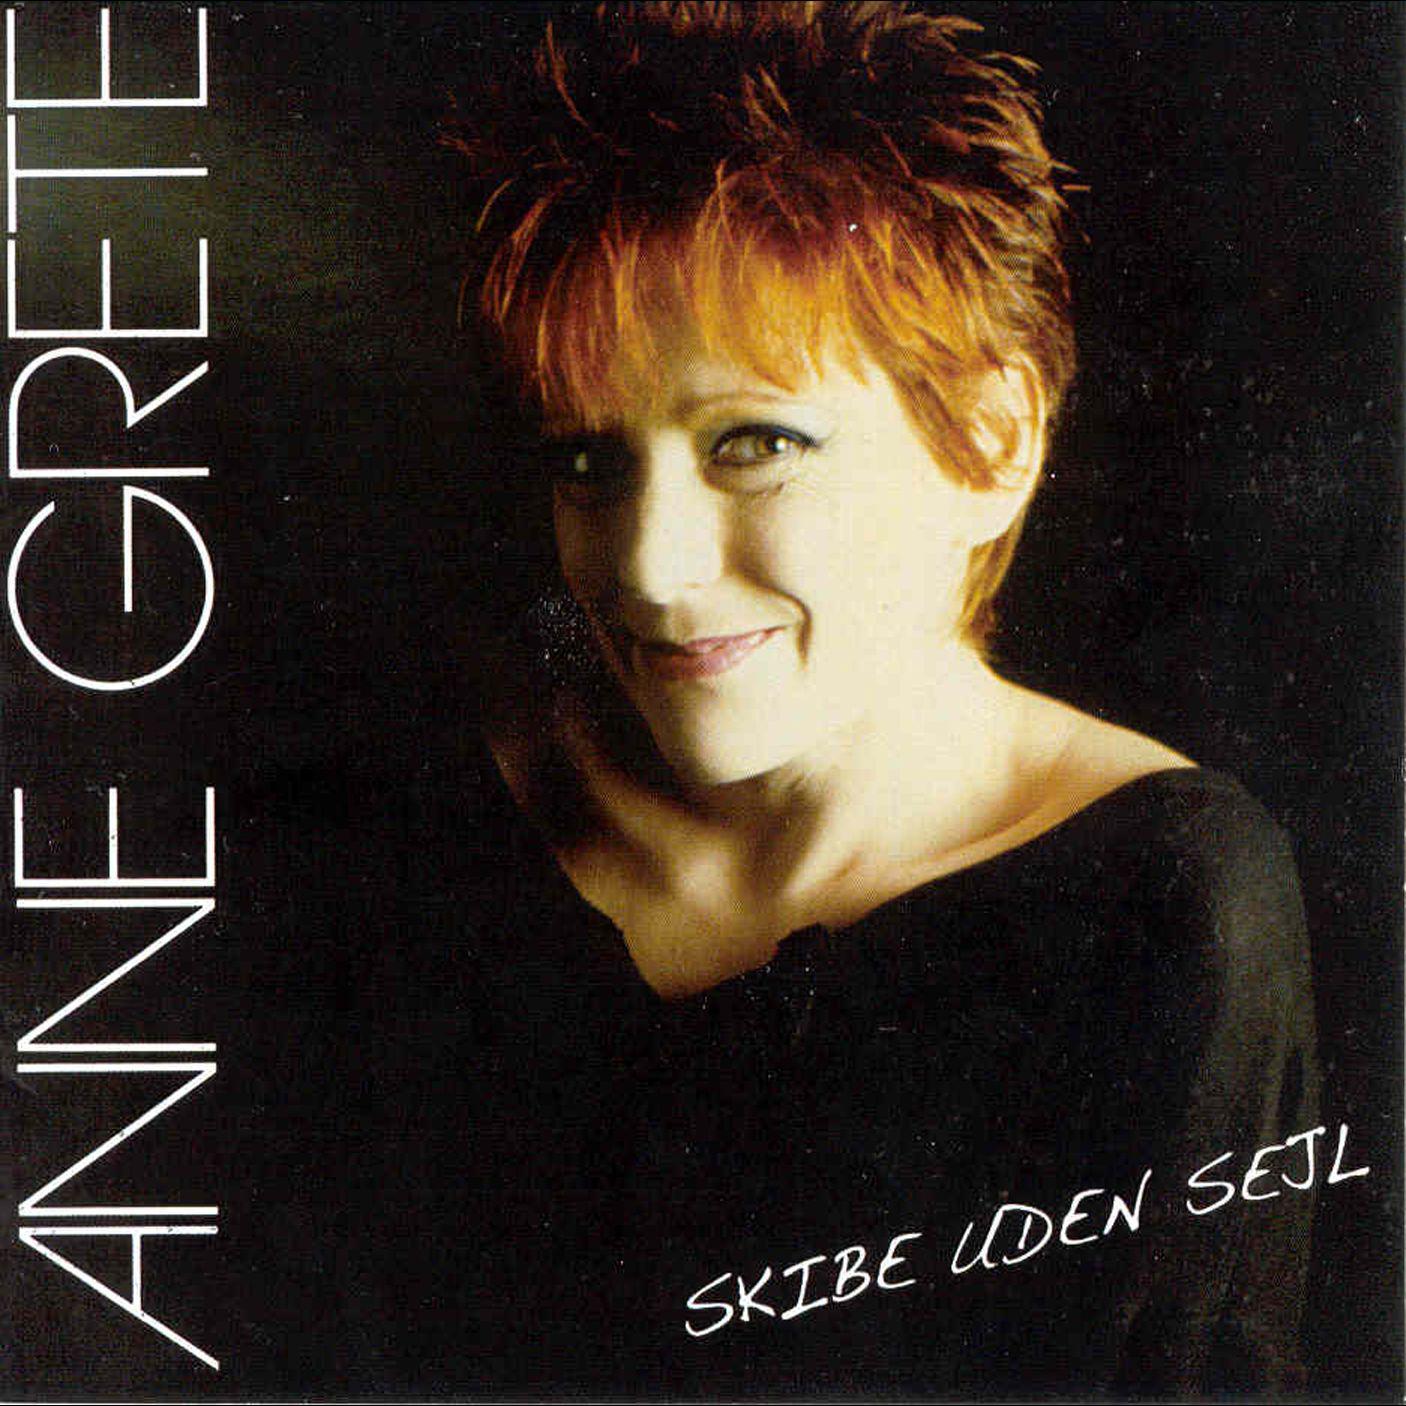 Anne Grete - Ulvetider (2007 Remastered Version)